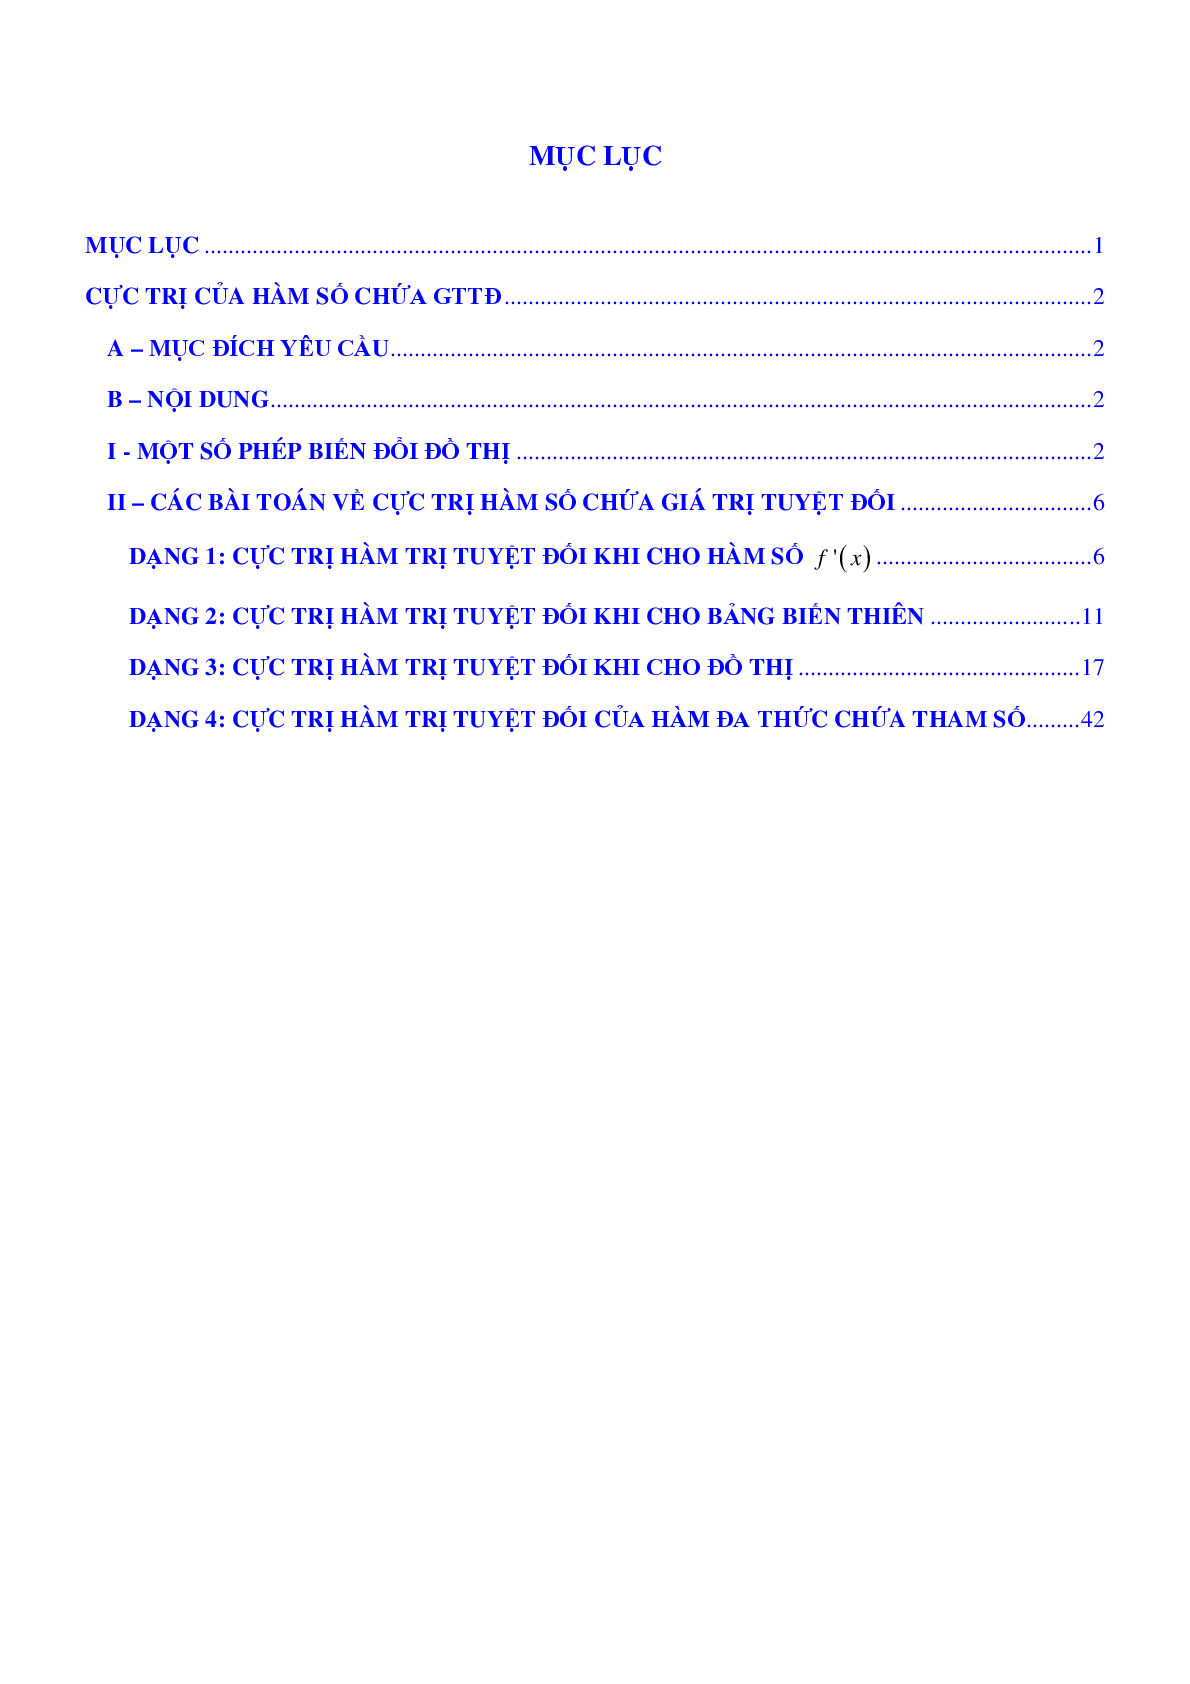 116 câu Trắc nghiệm Vận dụng - Vận dụng cao cực trị hàm chứa dấu giá trị tuyệt đối 2023 (trang 2)